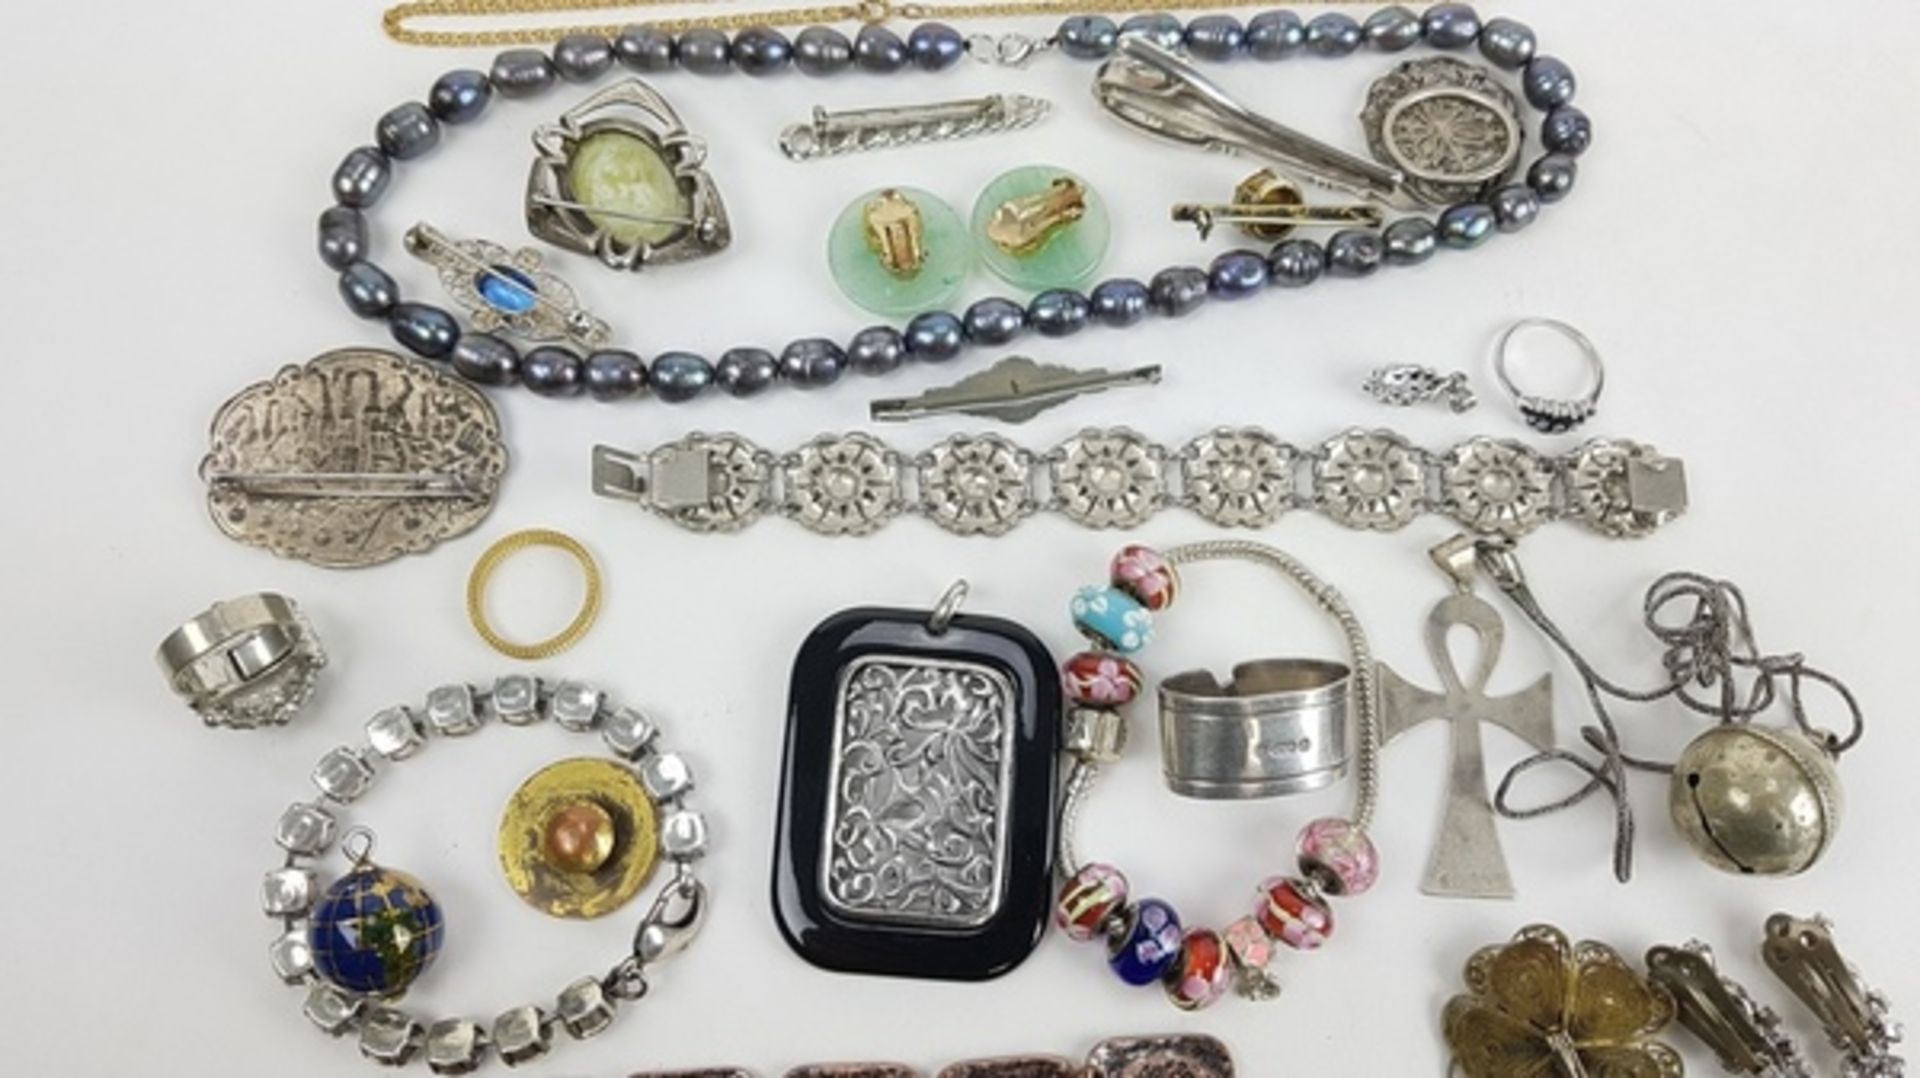 (Sieraden) Diverse materialen, lot van 34 stuks diverse sieraden, 20e eeuwDiverse materialen w - Bild 5 aus 15